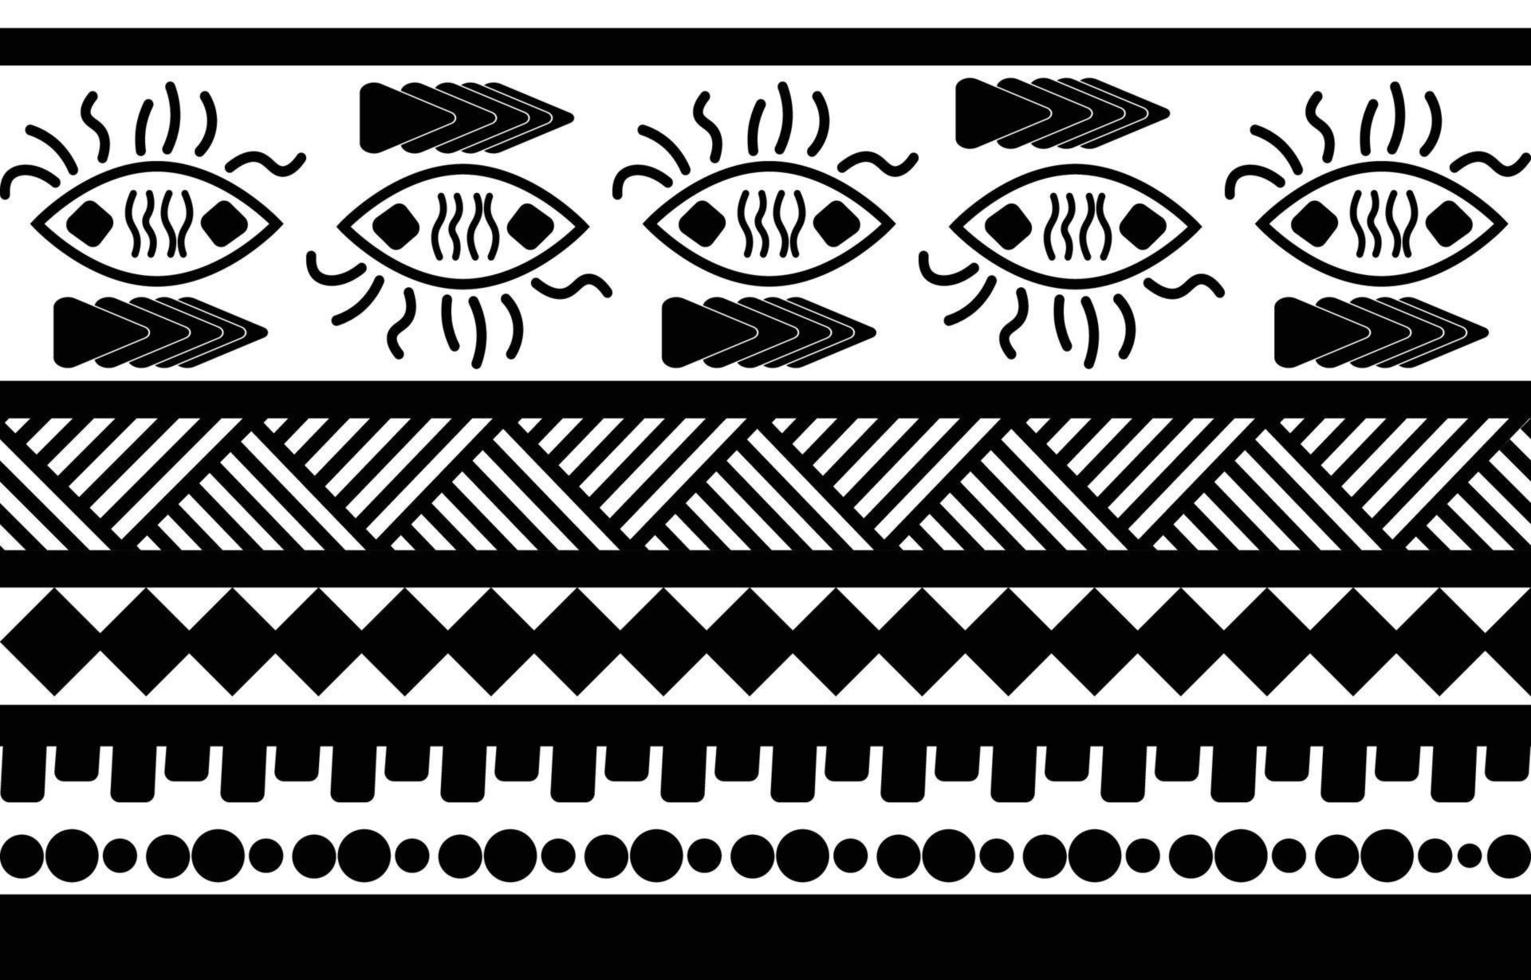 conception de motifs géométriques ethniques abstraits tribaux noirs et blancs pour le fond ou le papier peint.illustration vectorielle pour imprimer des motifs de tissus, des tapis, des chemises, des costumes, des turbans, des chapeaux, des rideaux. vecteur